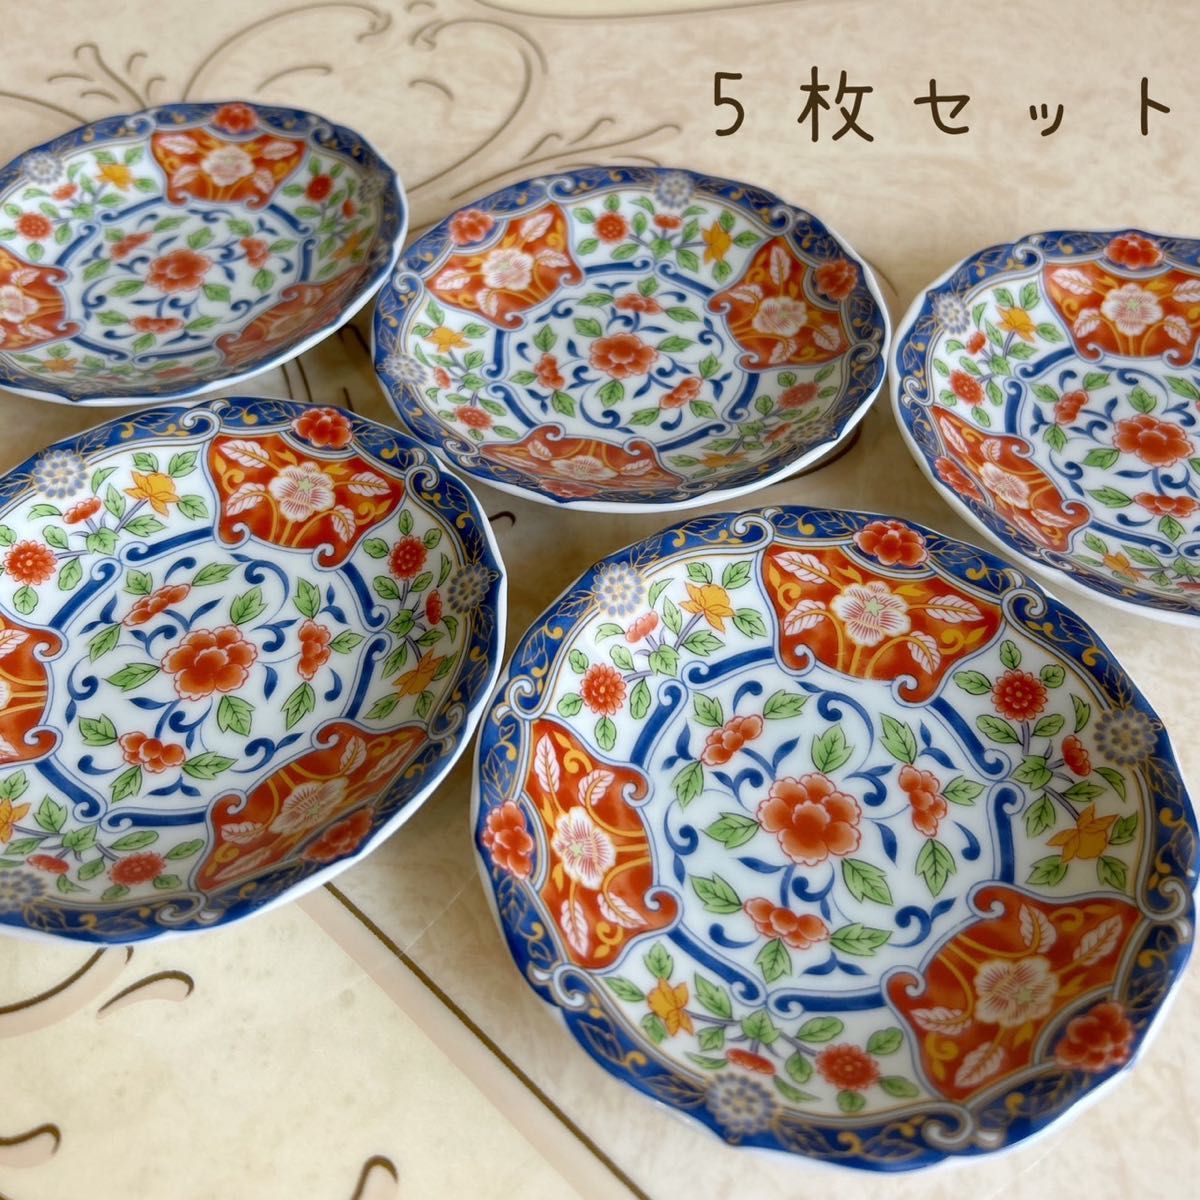 有田焼 飛鳥窯 銘々皿揃 5枚セット 色絵 古伊万里 小皿 取り皿 和食器